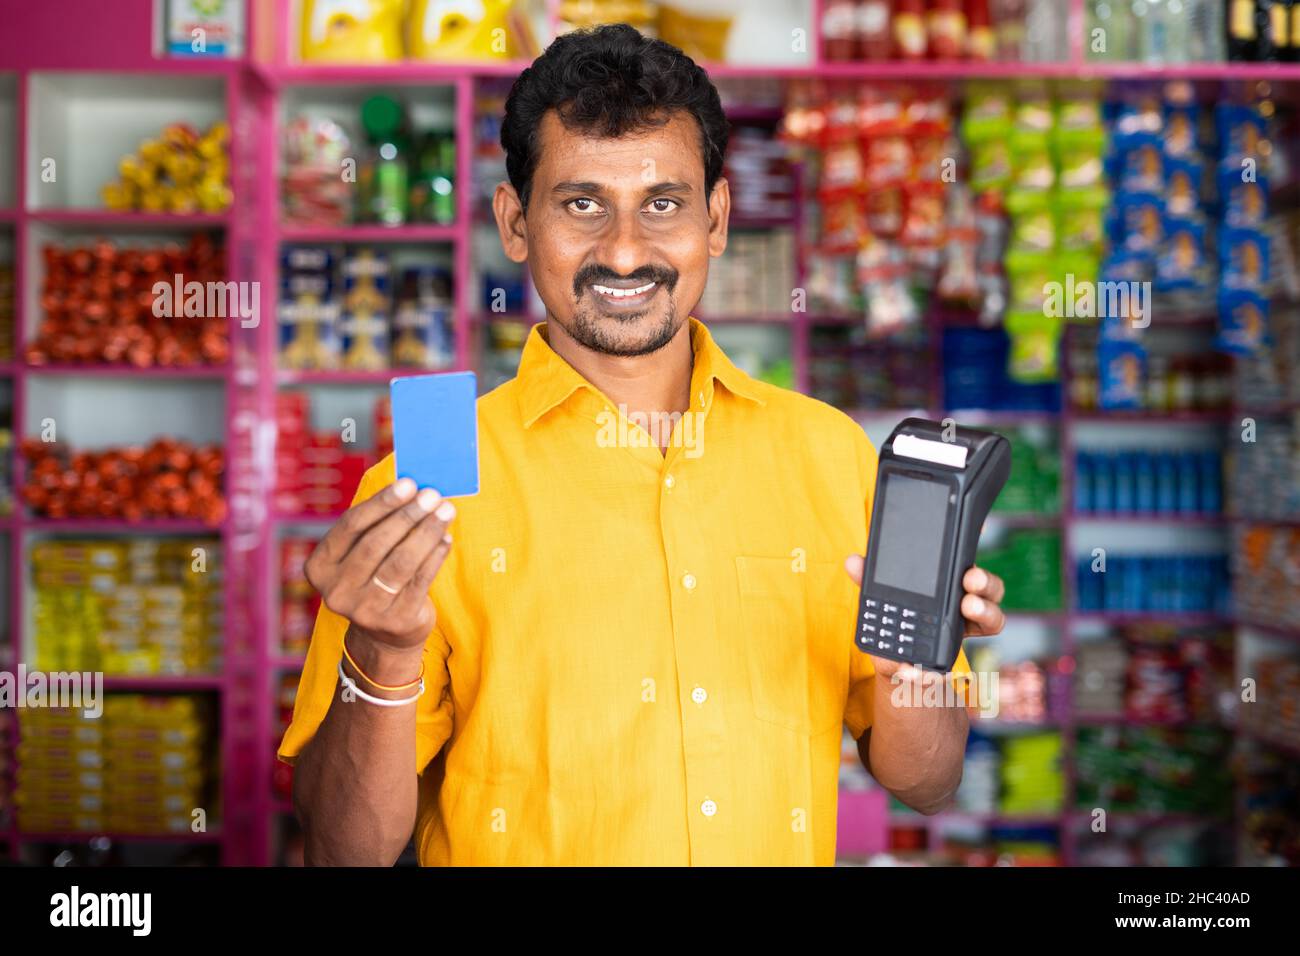 Kirana ou marchand d'épicerie montrant la carte de crédit et de glisser la machine de point de vente - concept d'accepter le paiement numérique dans les affaires de détail, l'achat sans espèces Banque D'Images